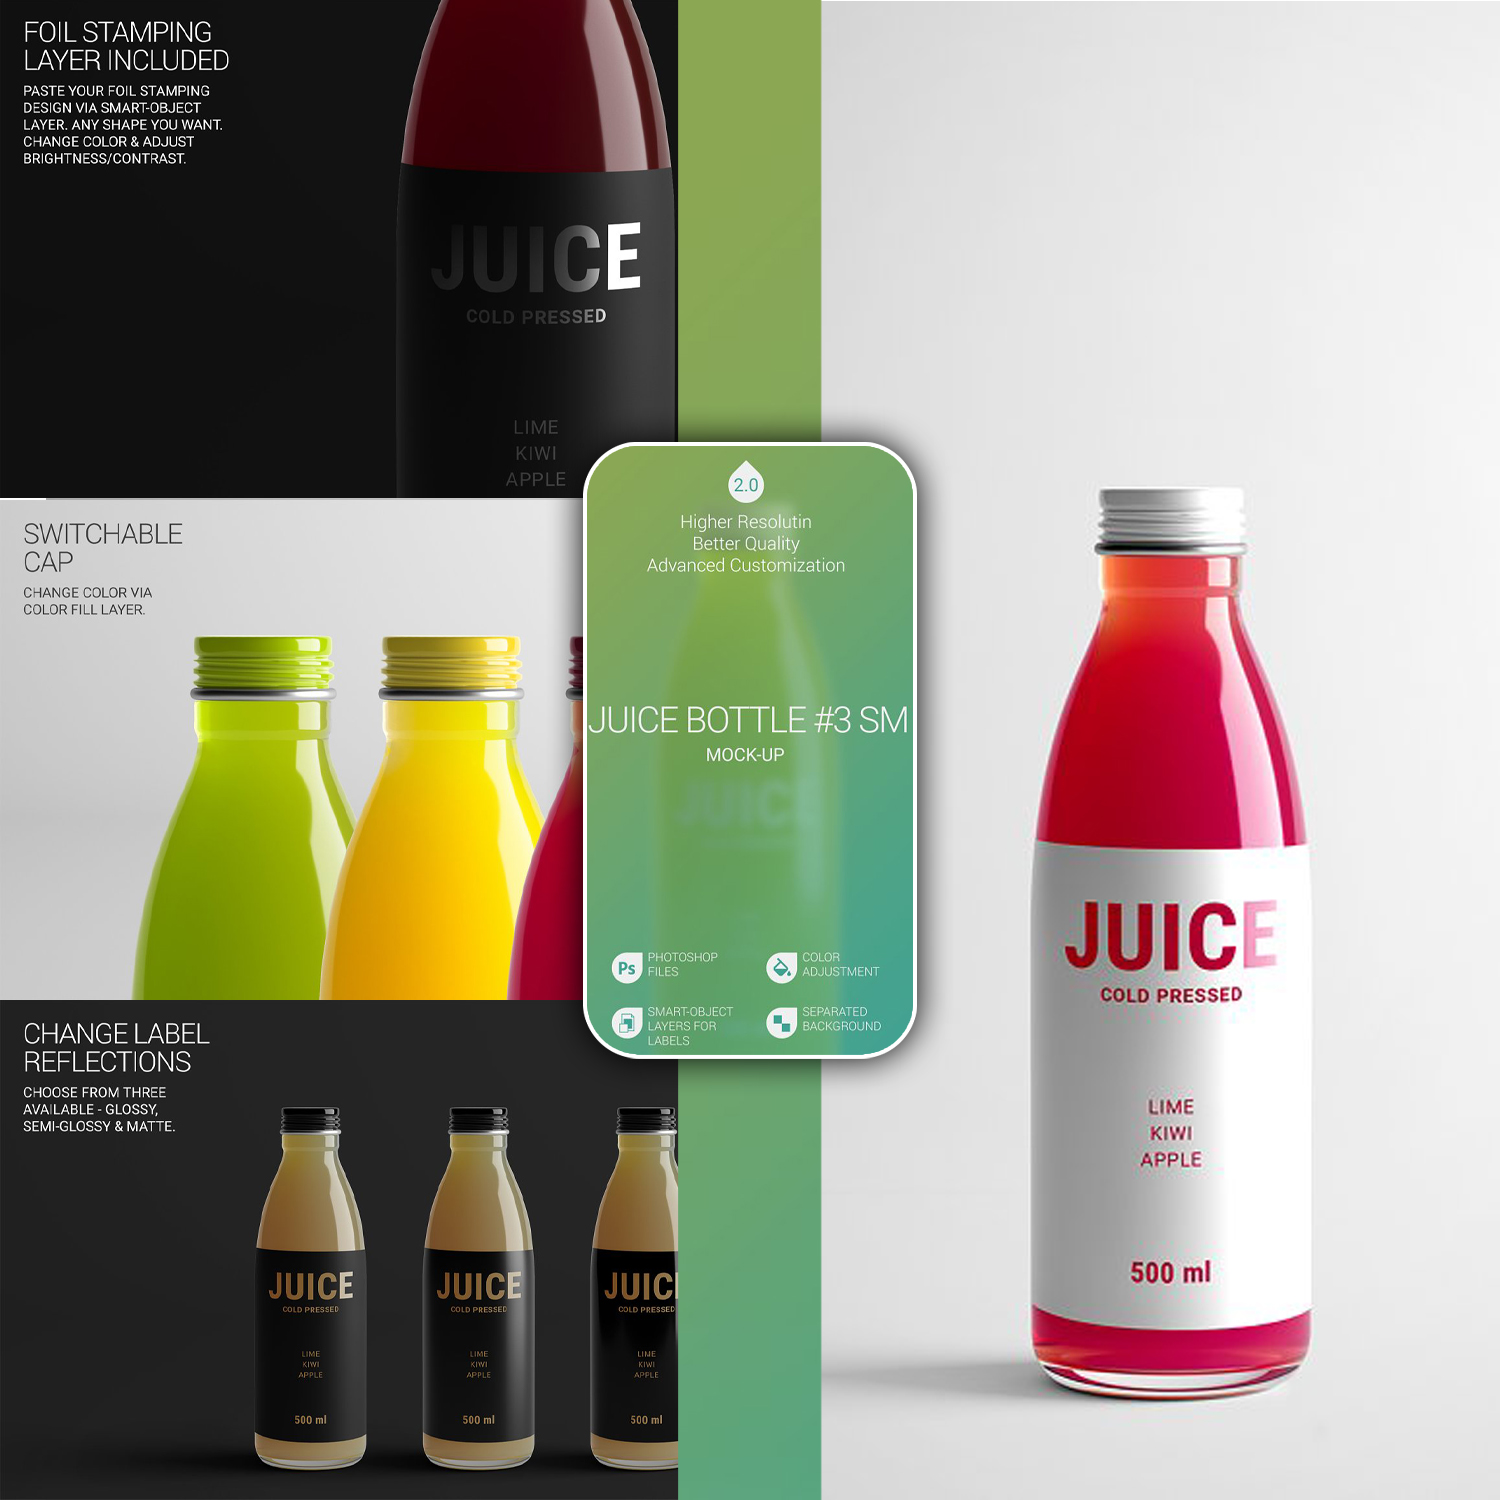 Juice bottle mockup preview.